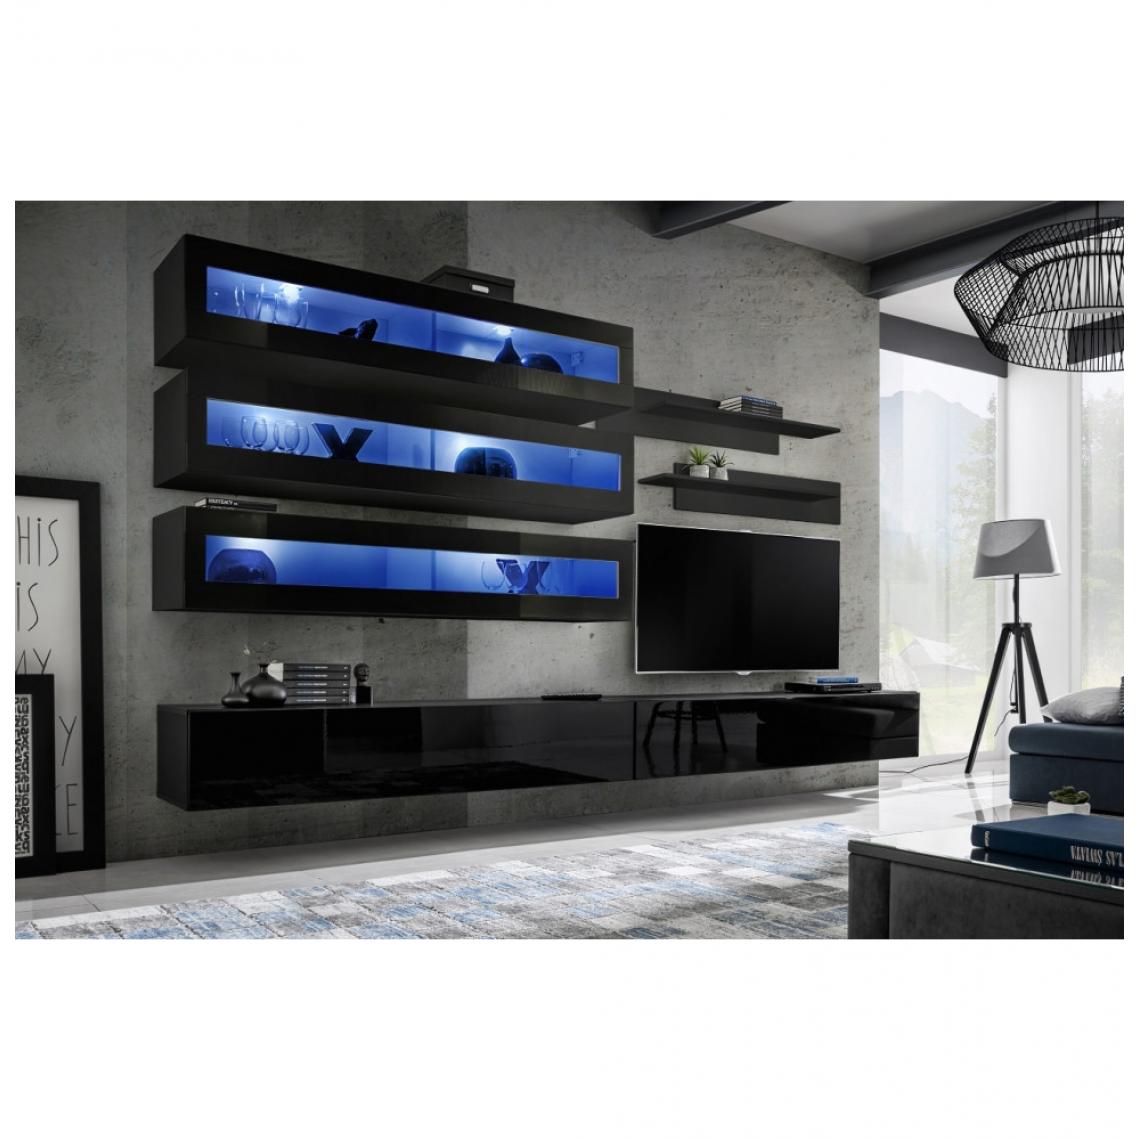 Ac-Deco - Ensemble mural - FLY J - 3 rangements LED - 2 meubles TV - 2 étagères - Noir - Modèle 1 - Meubles TV, Hi-Fi